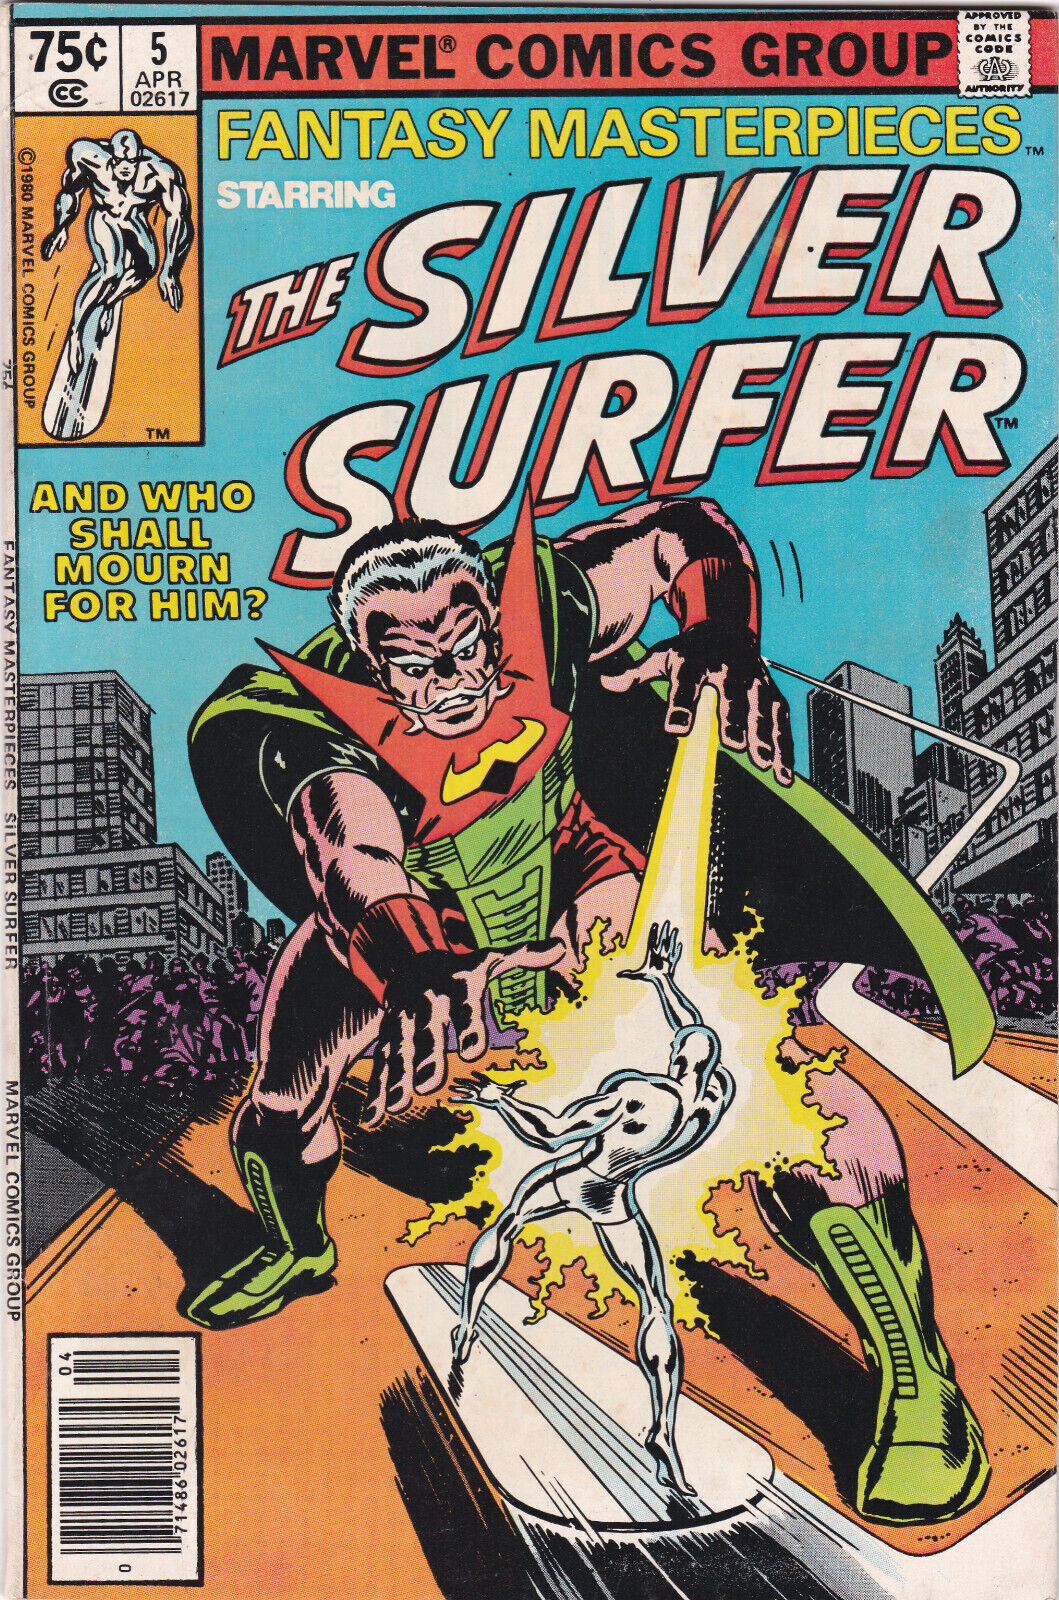 Fantasy Masterpieces #5 Vol. 2 (Marvel, 1980) Silver Surfer